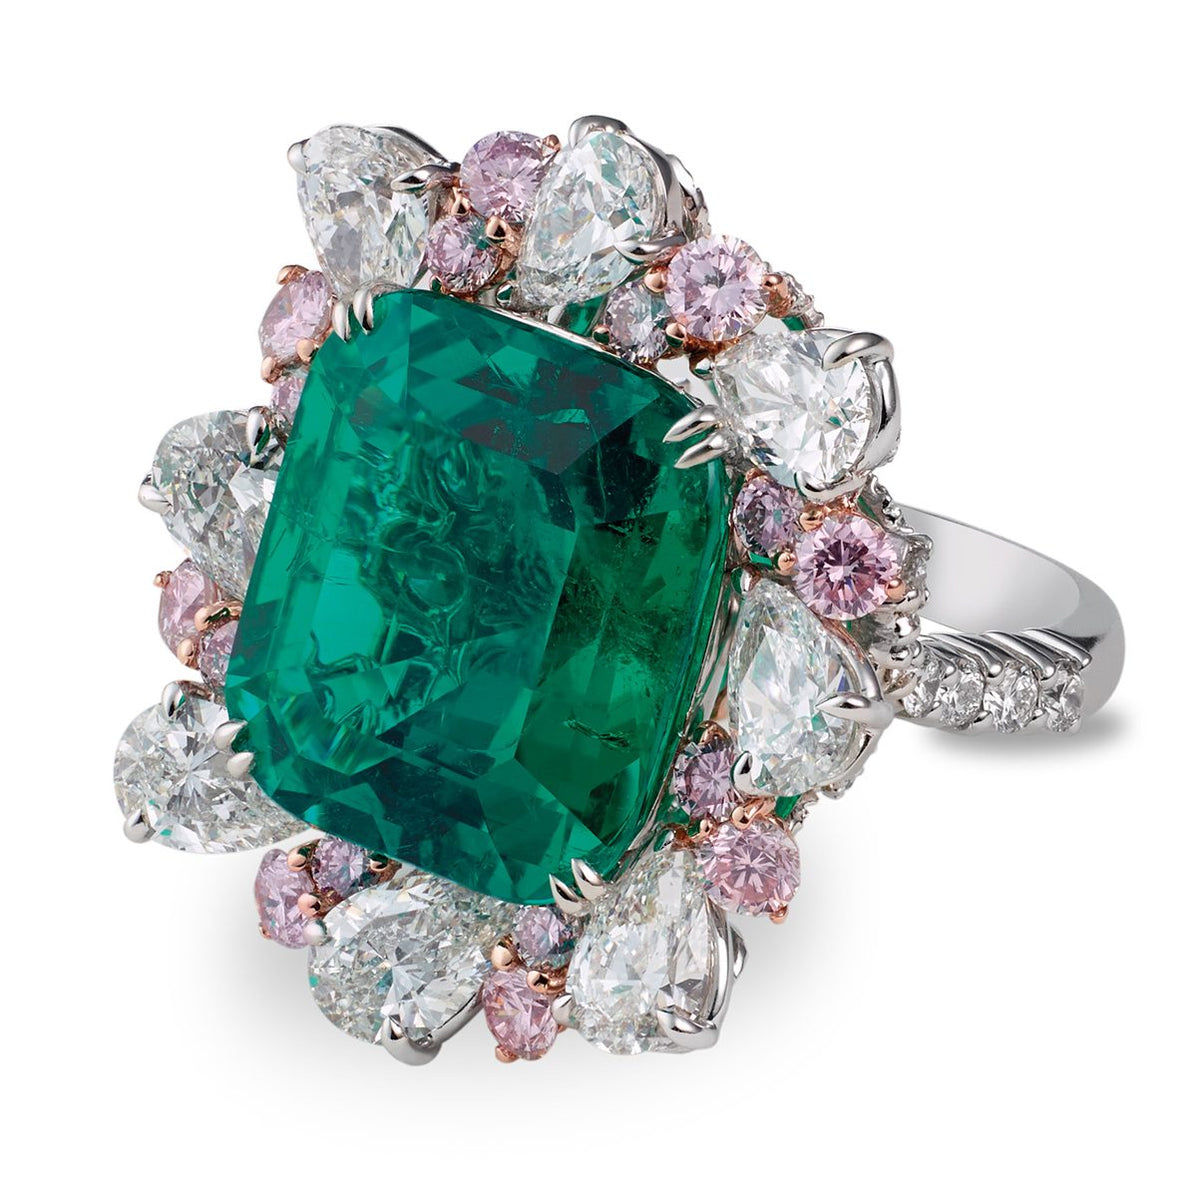 The Alluring Treasure – Muzo Emerald Colombia